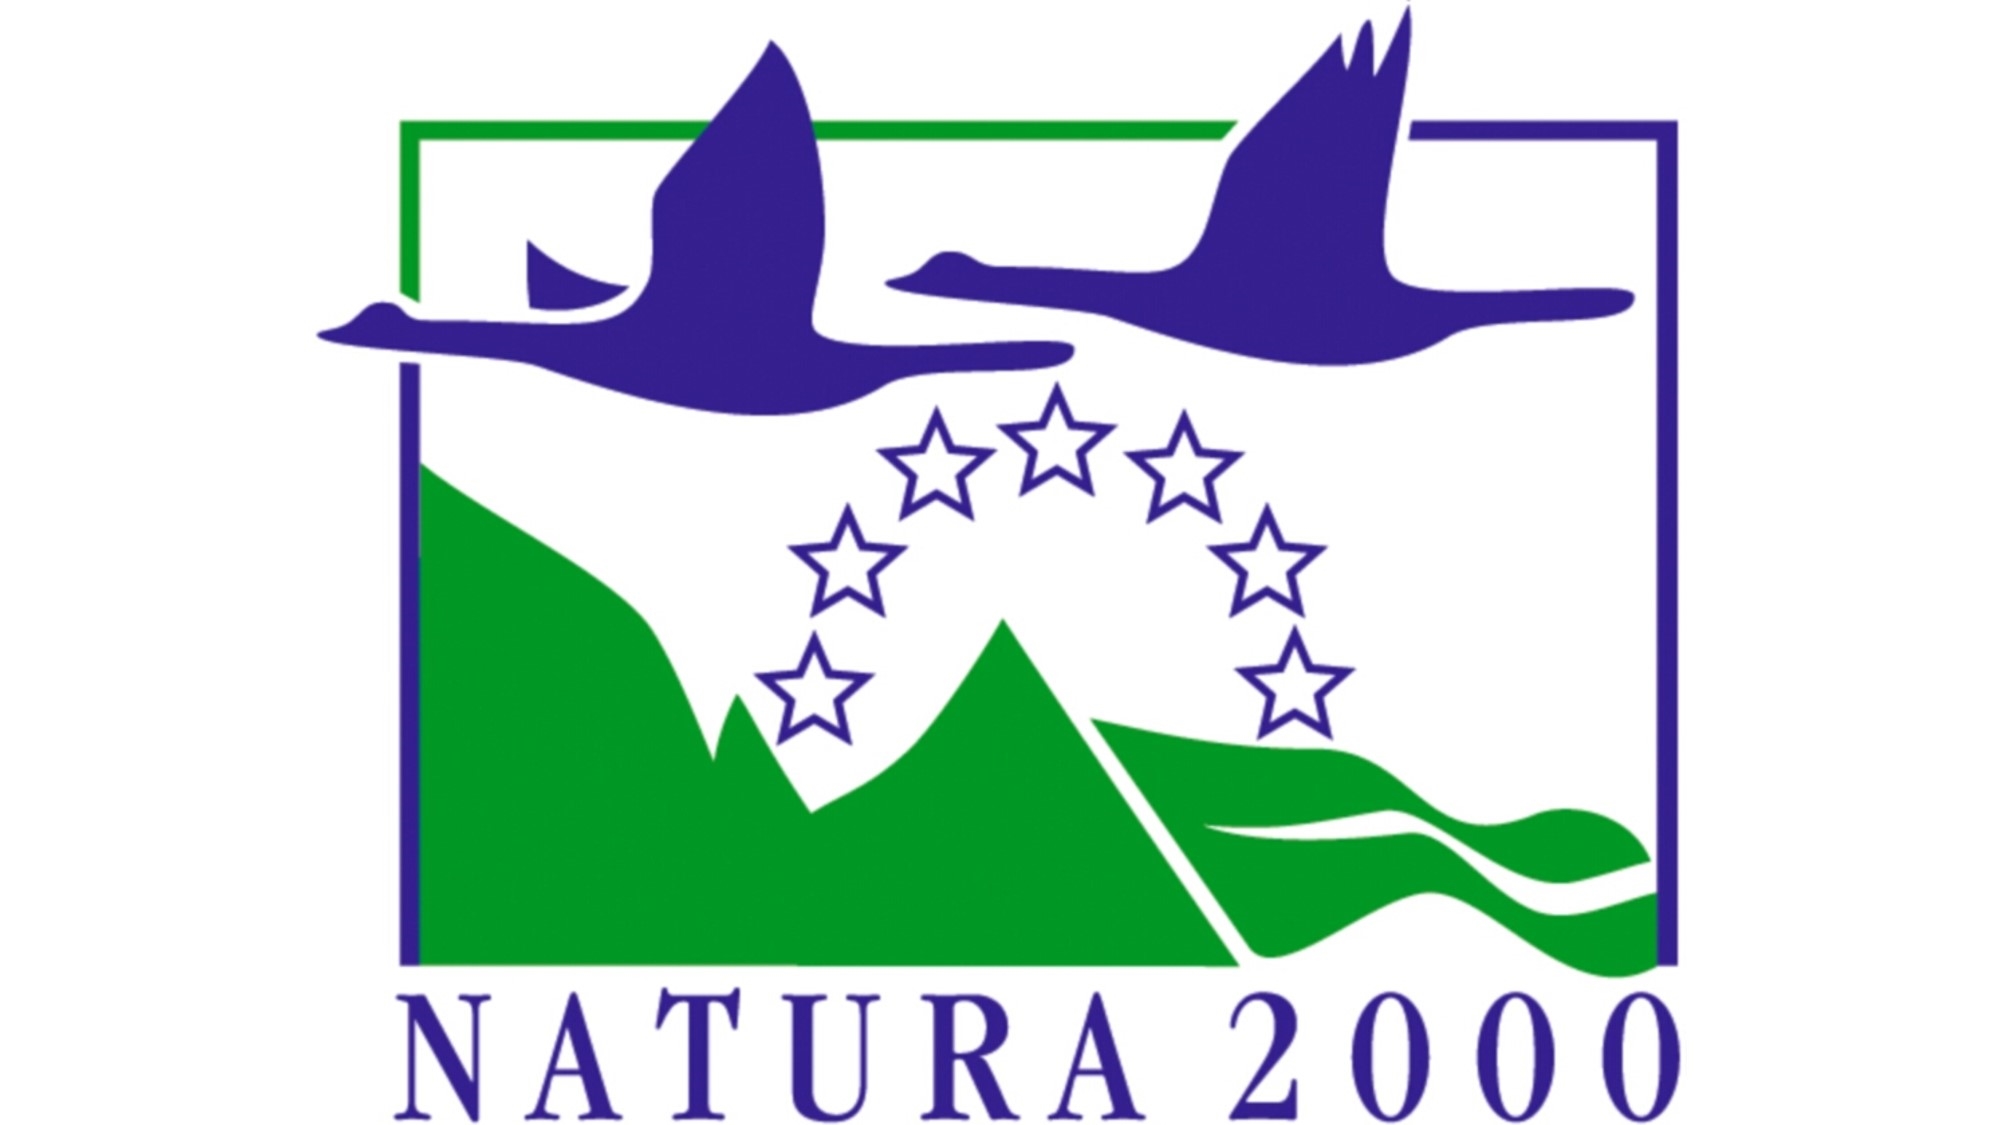 Natura2000.jpg